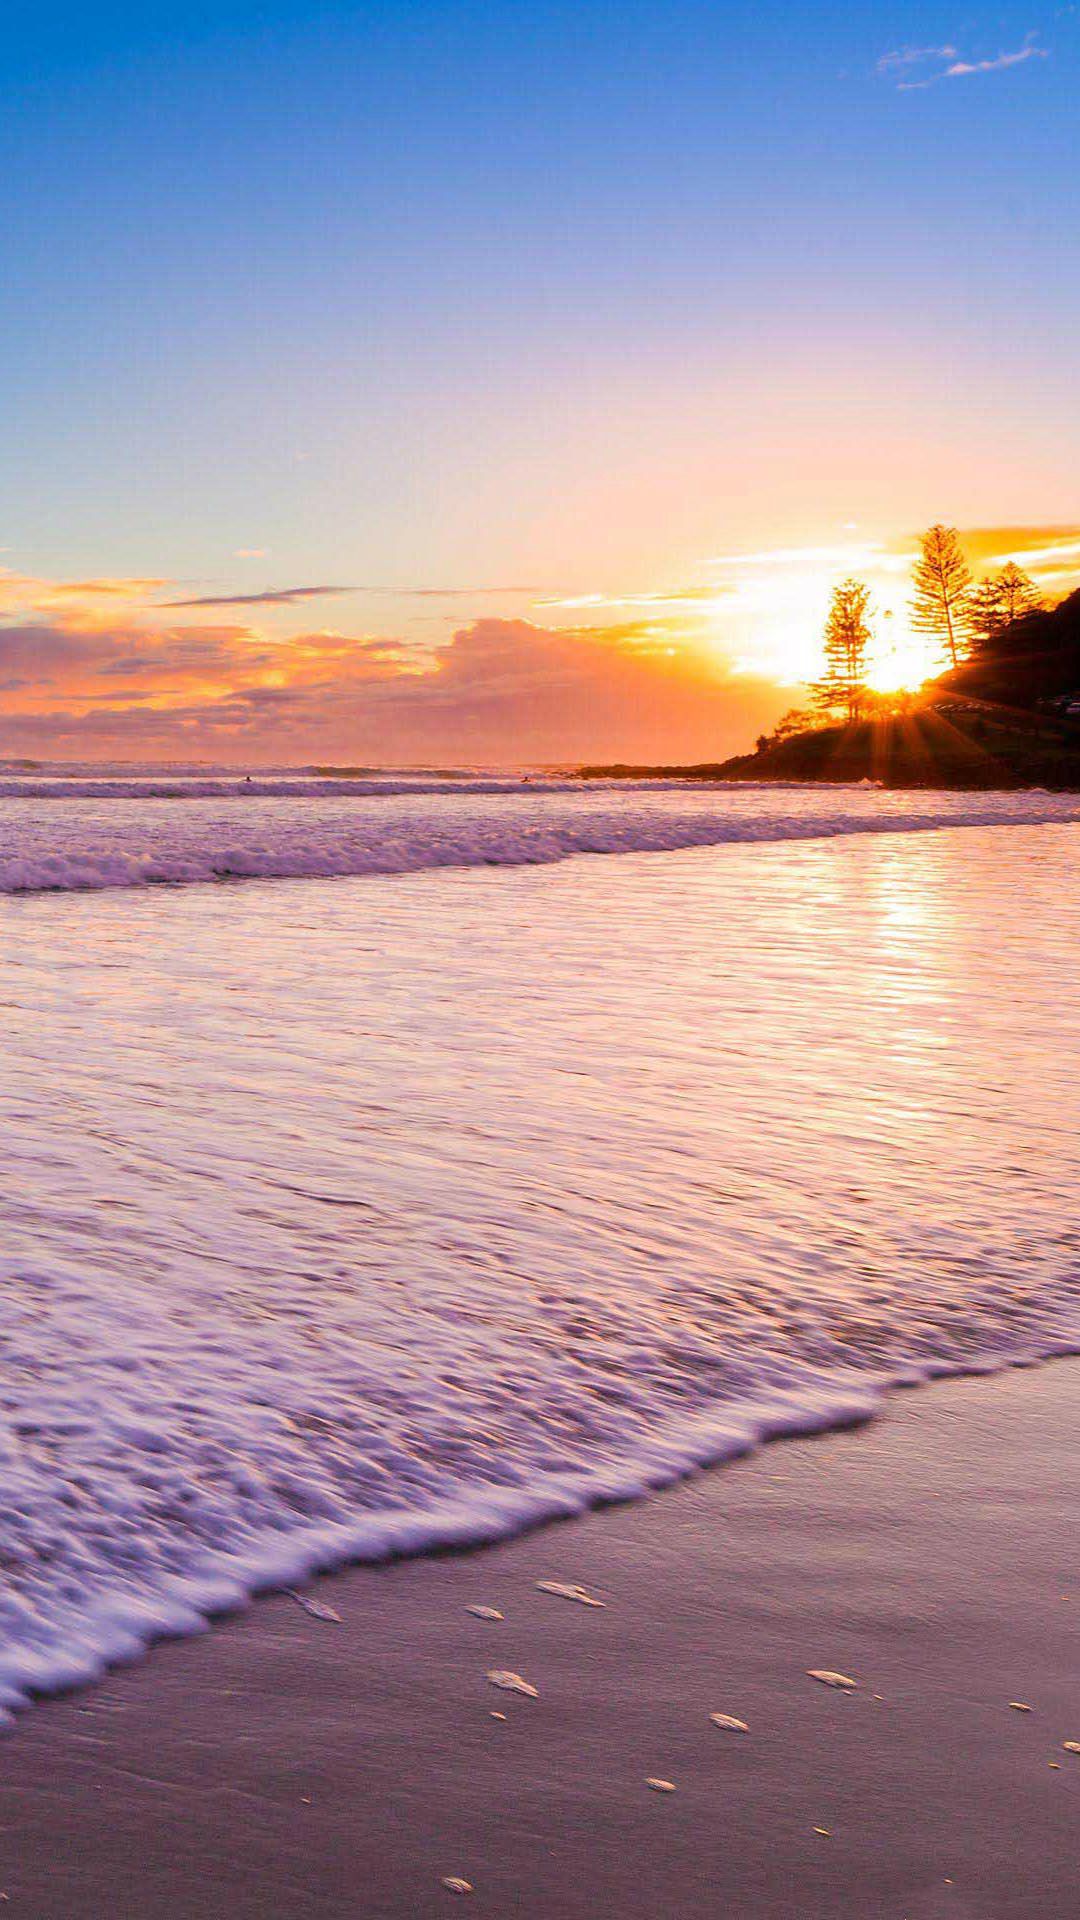 Beach Sunset Wallpapers Iphone - 1080x1920 Wallpaper 